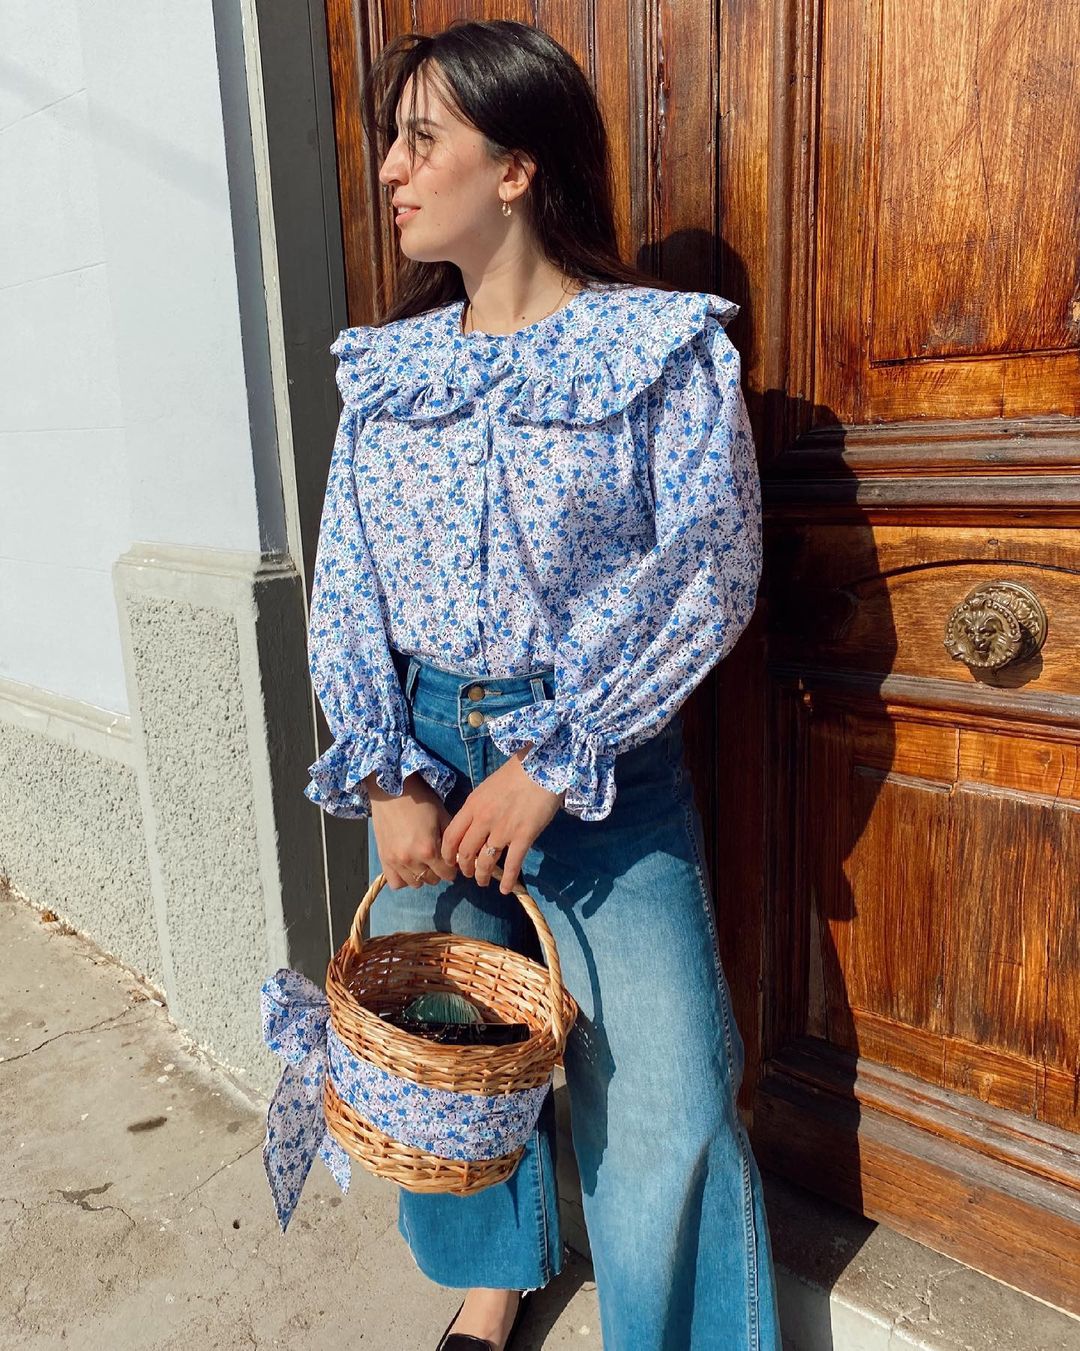 Bermé Atelier, la marca chilena con las blusas más lindas de Instagram